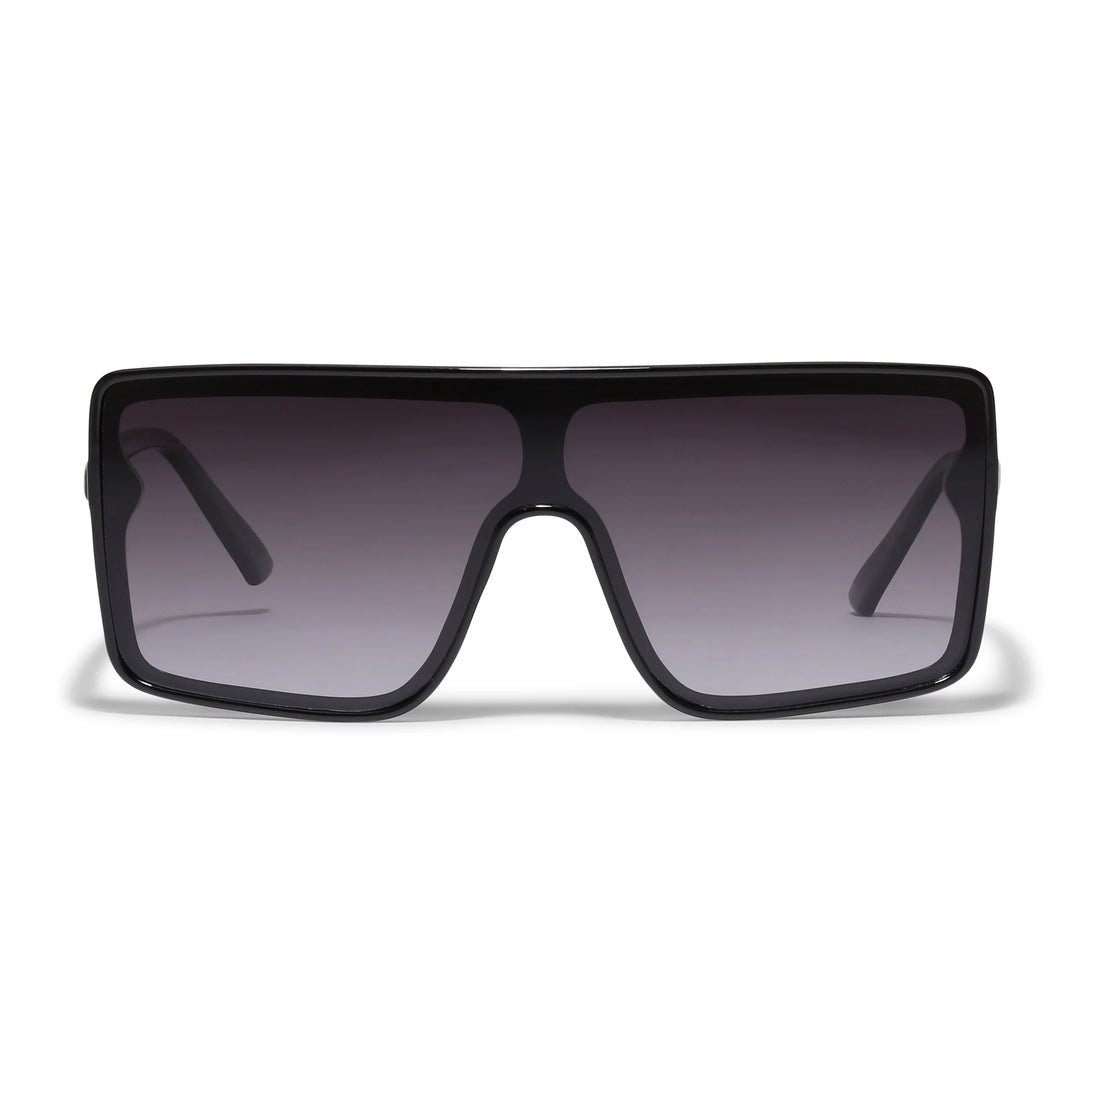 Oceane Black Sunglasses